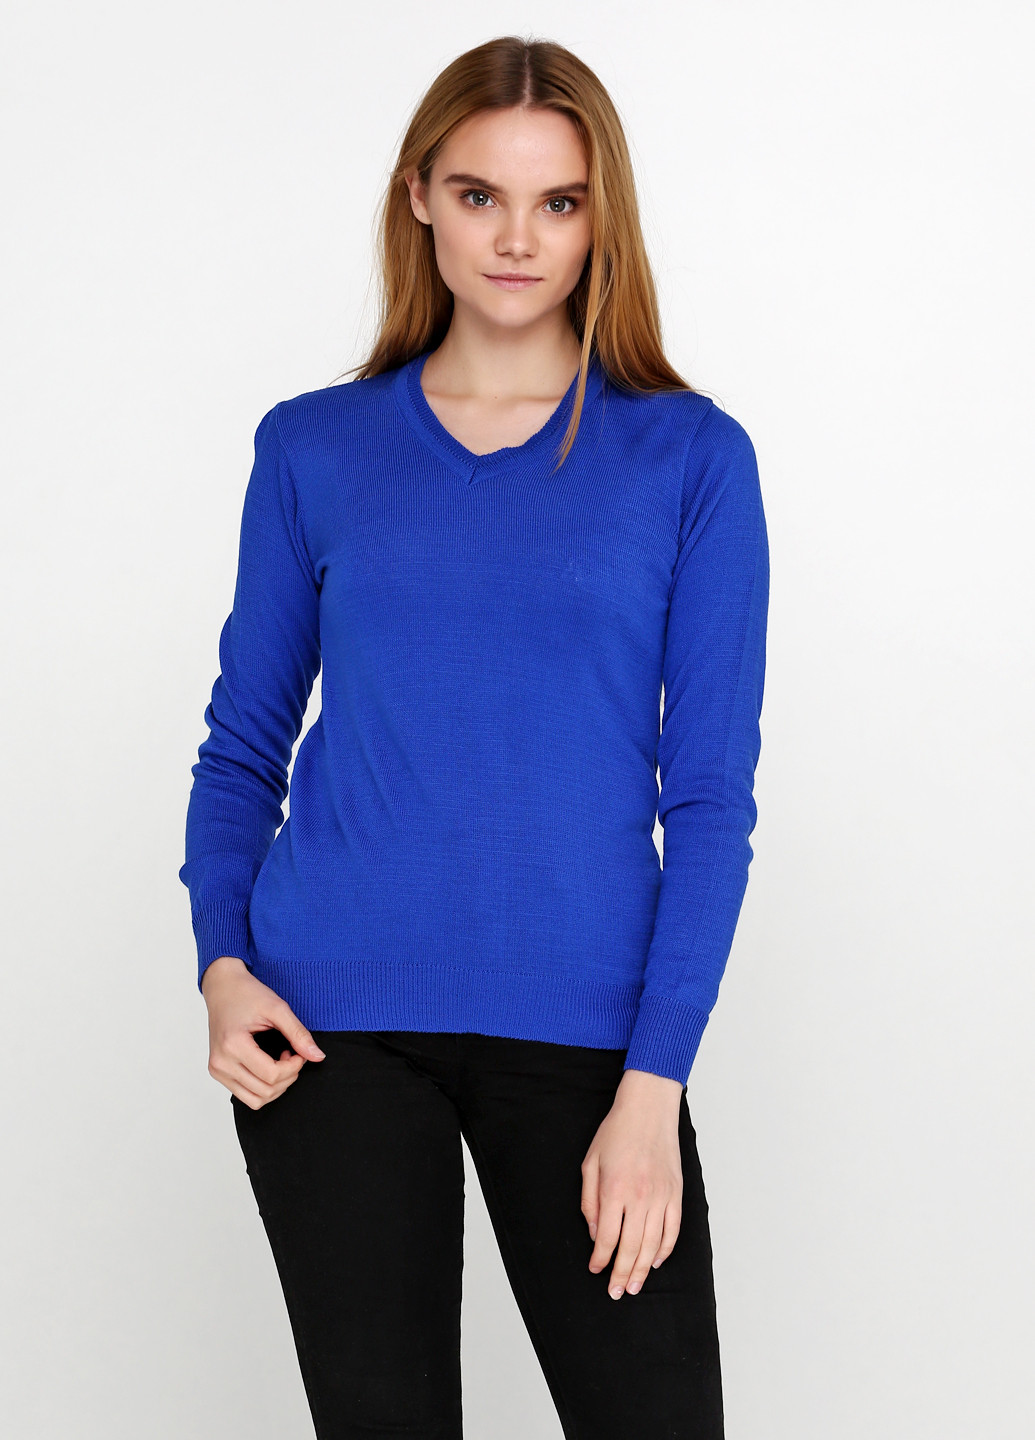 Синий демисезонный пуловер пуловер Babylon